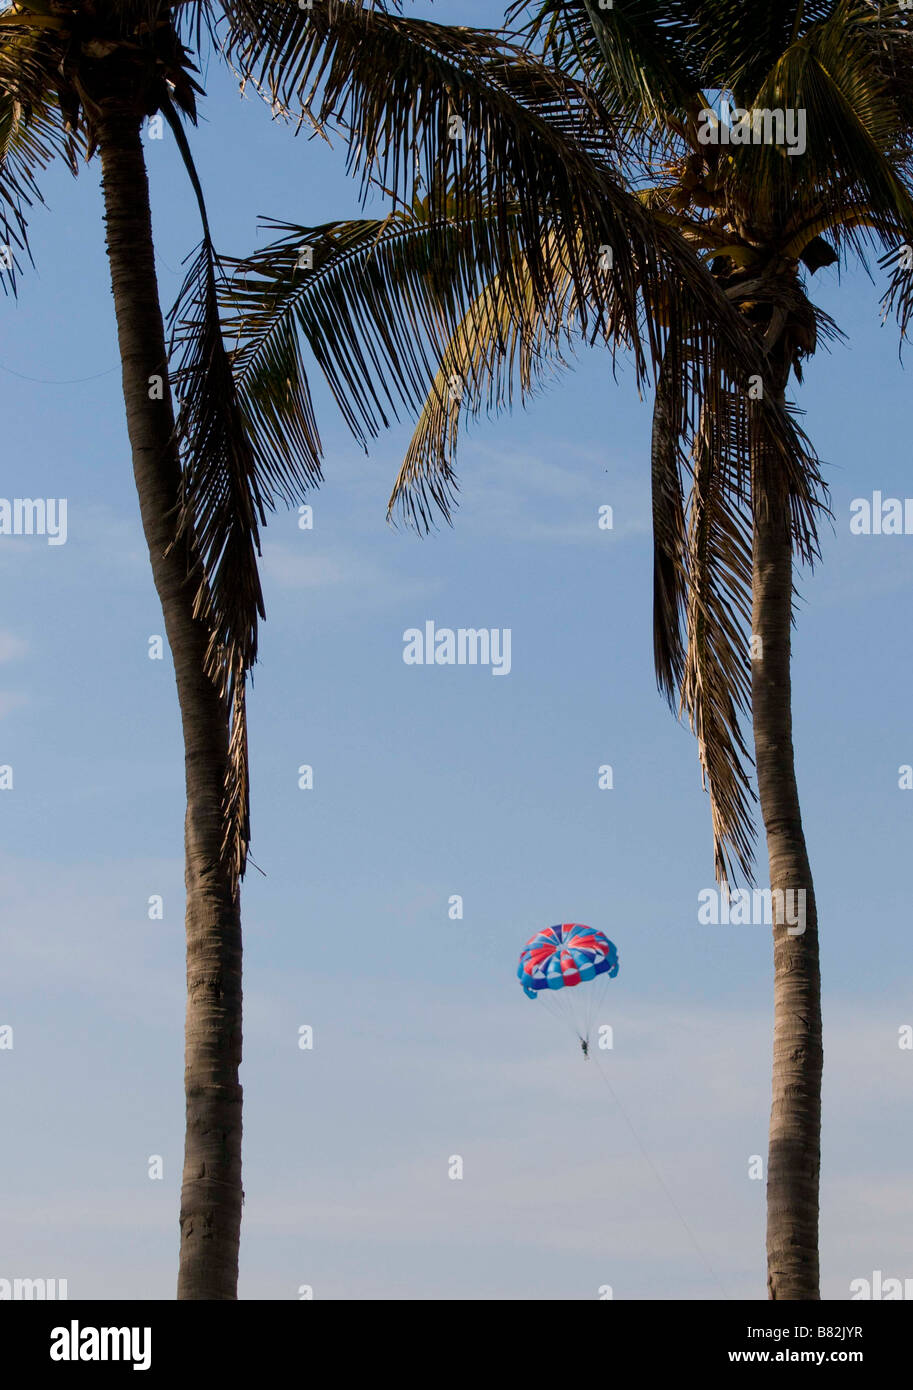 Messico SINOLA MEMBRO MAZATLAN persona parasailing tra alberi di palma in alto nel cielo zona dorata Foto Stock